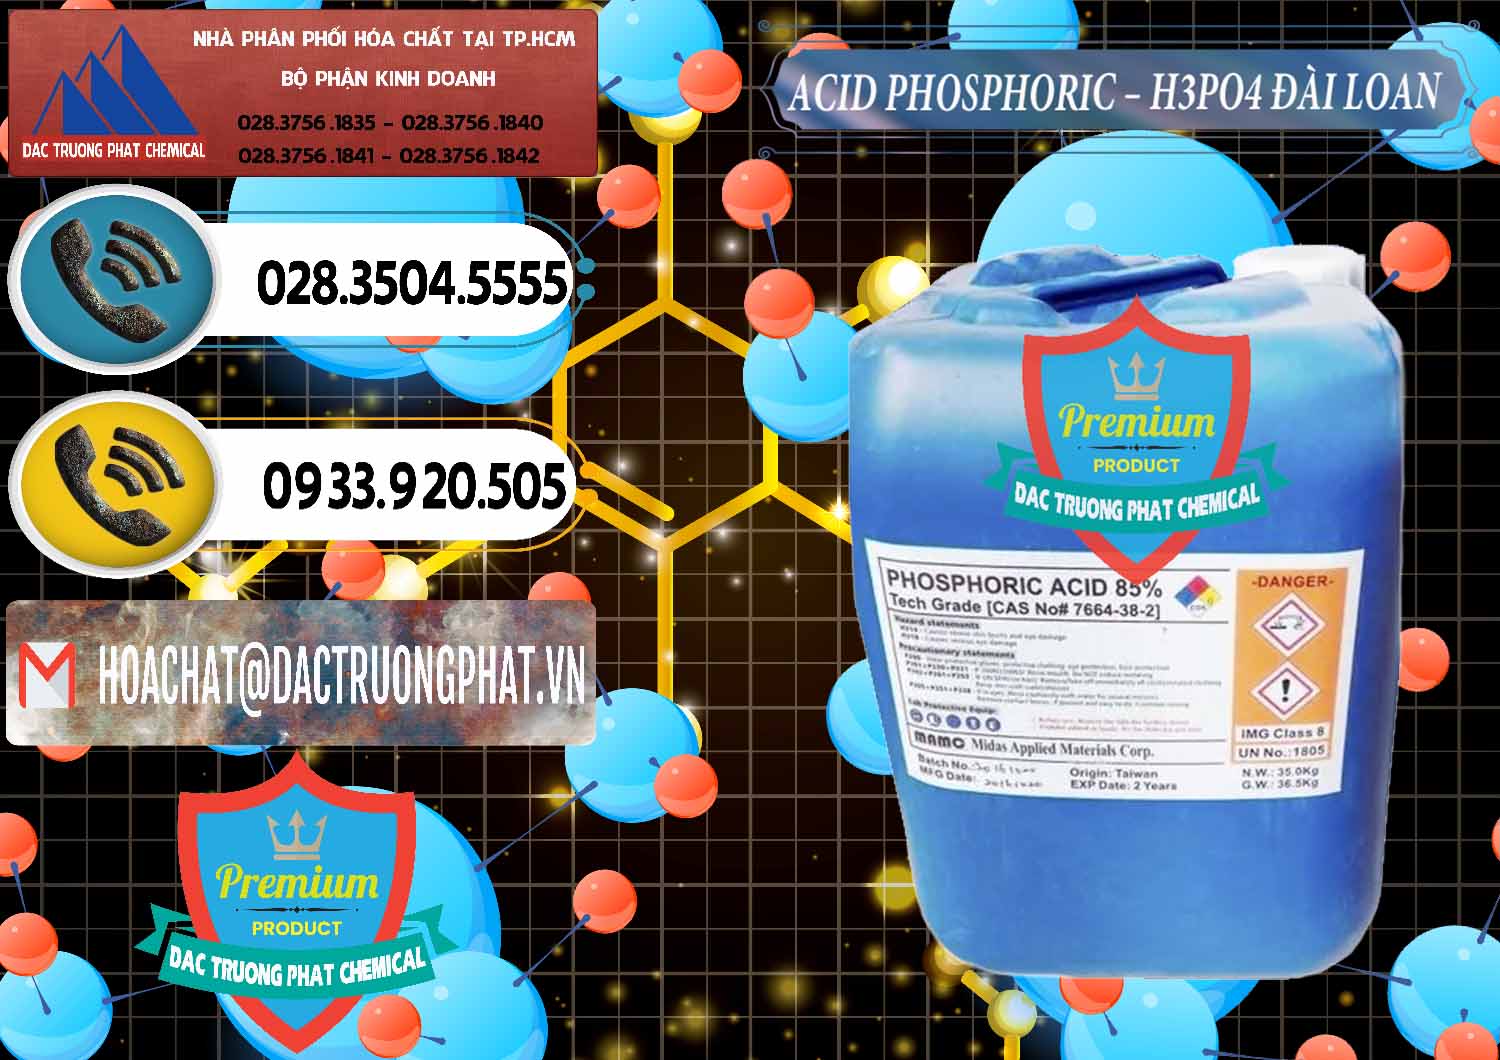 Chuyên phân phối & bán Axit Phosphoric - Acid Phosphoric H3PO4 85% Đài Loan Taiwan - 0351 - Cty chuyên bán ( phân phối ) hóa chất tại TP.HCM - hoachatdetnhuom.vn